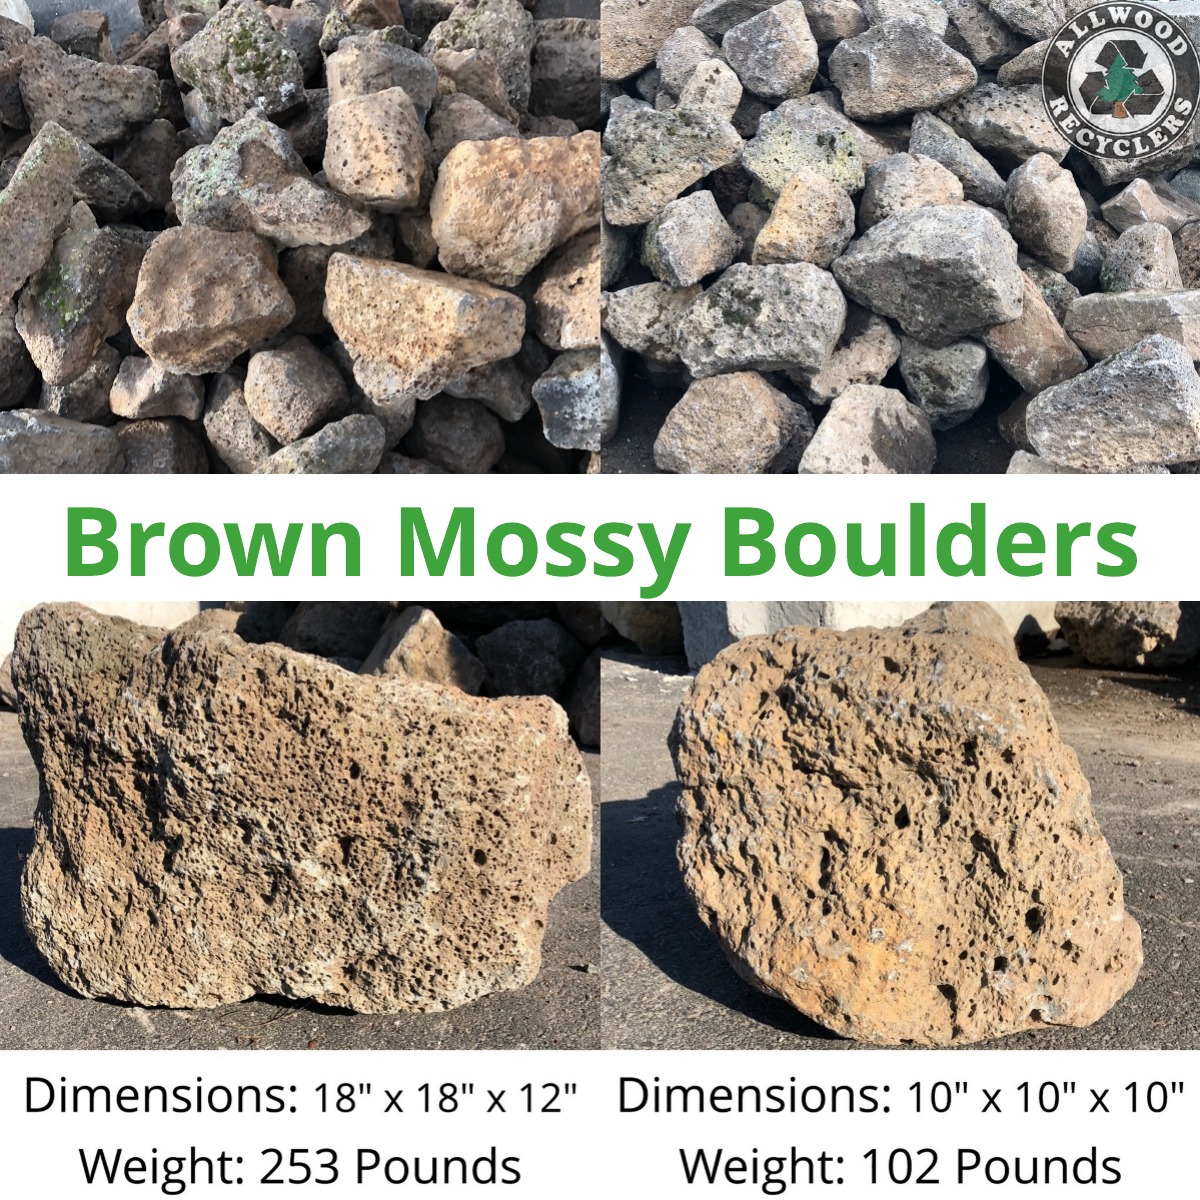 Brown Mossy Boulders